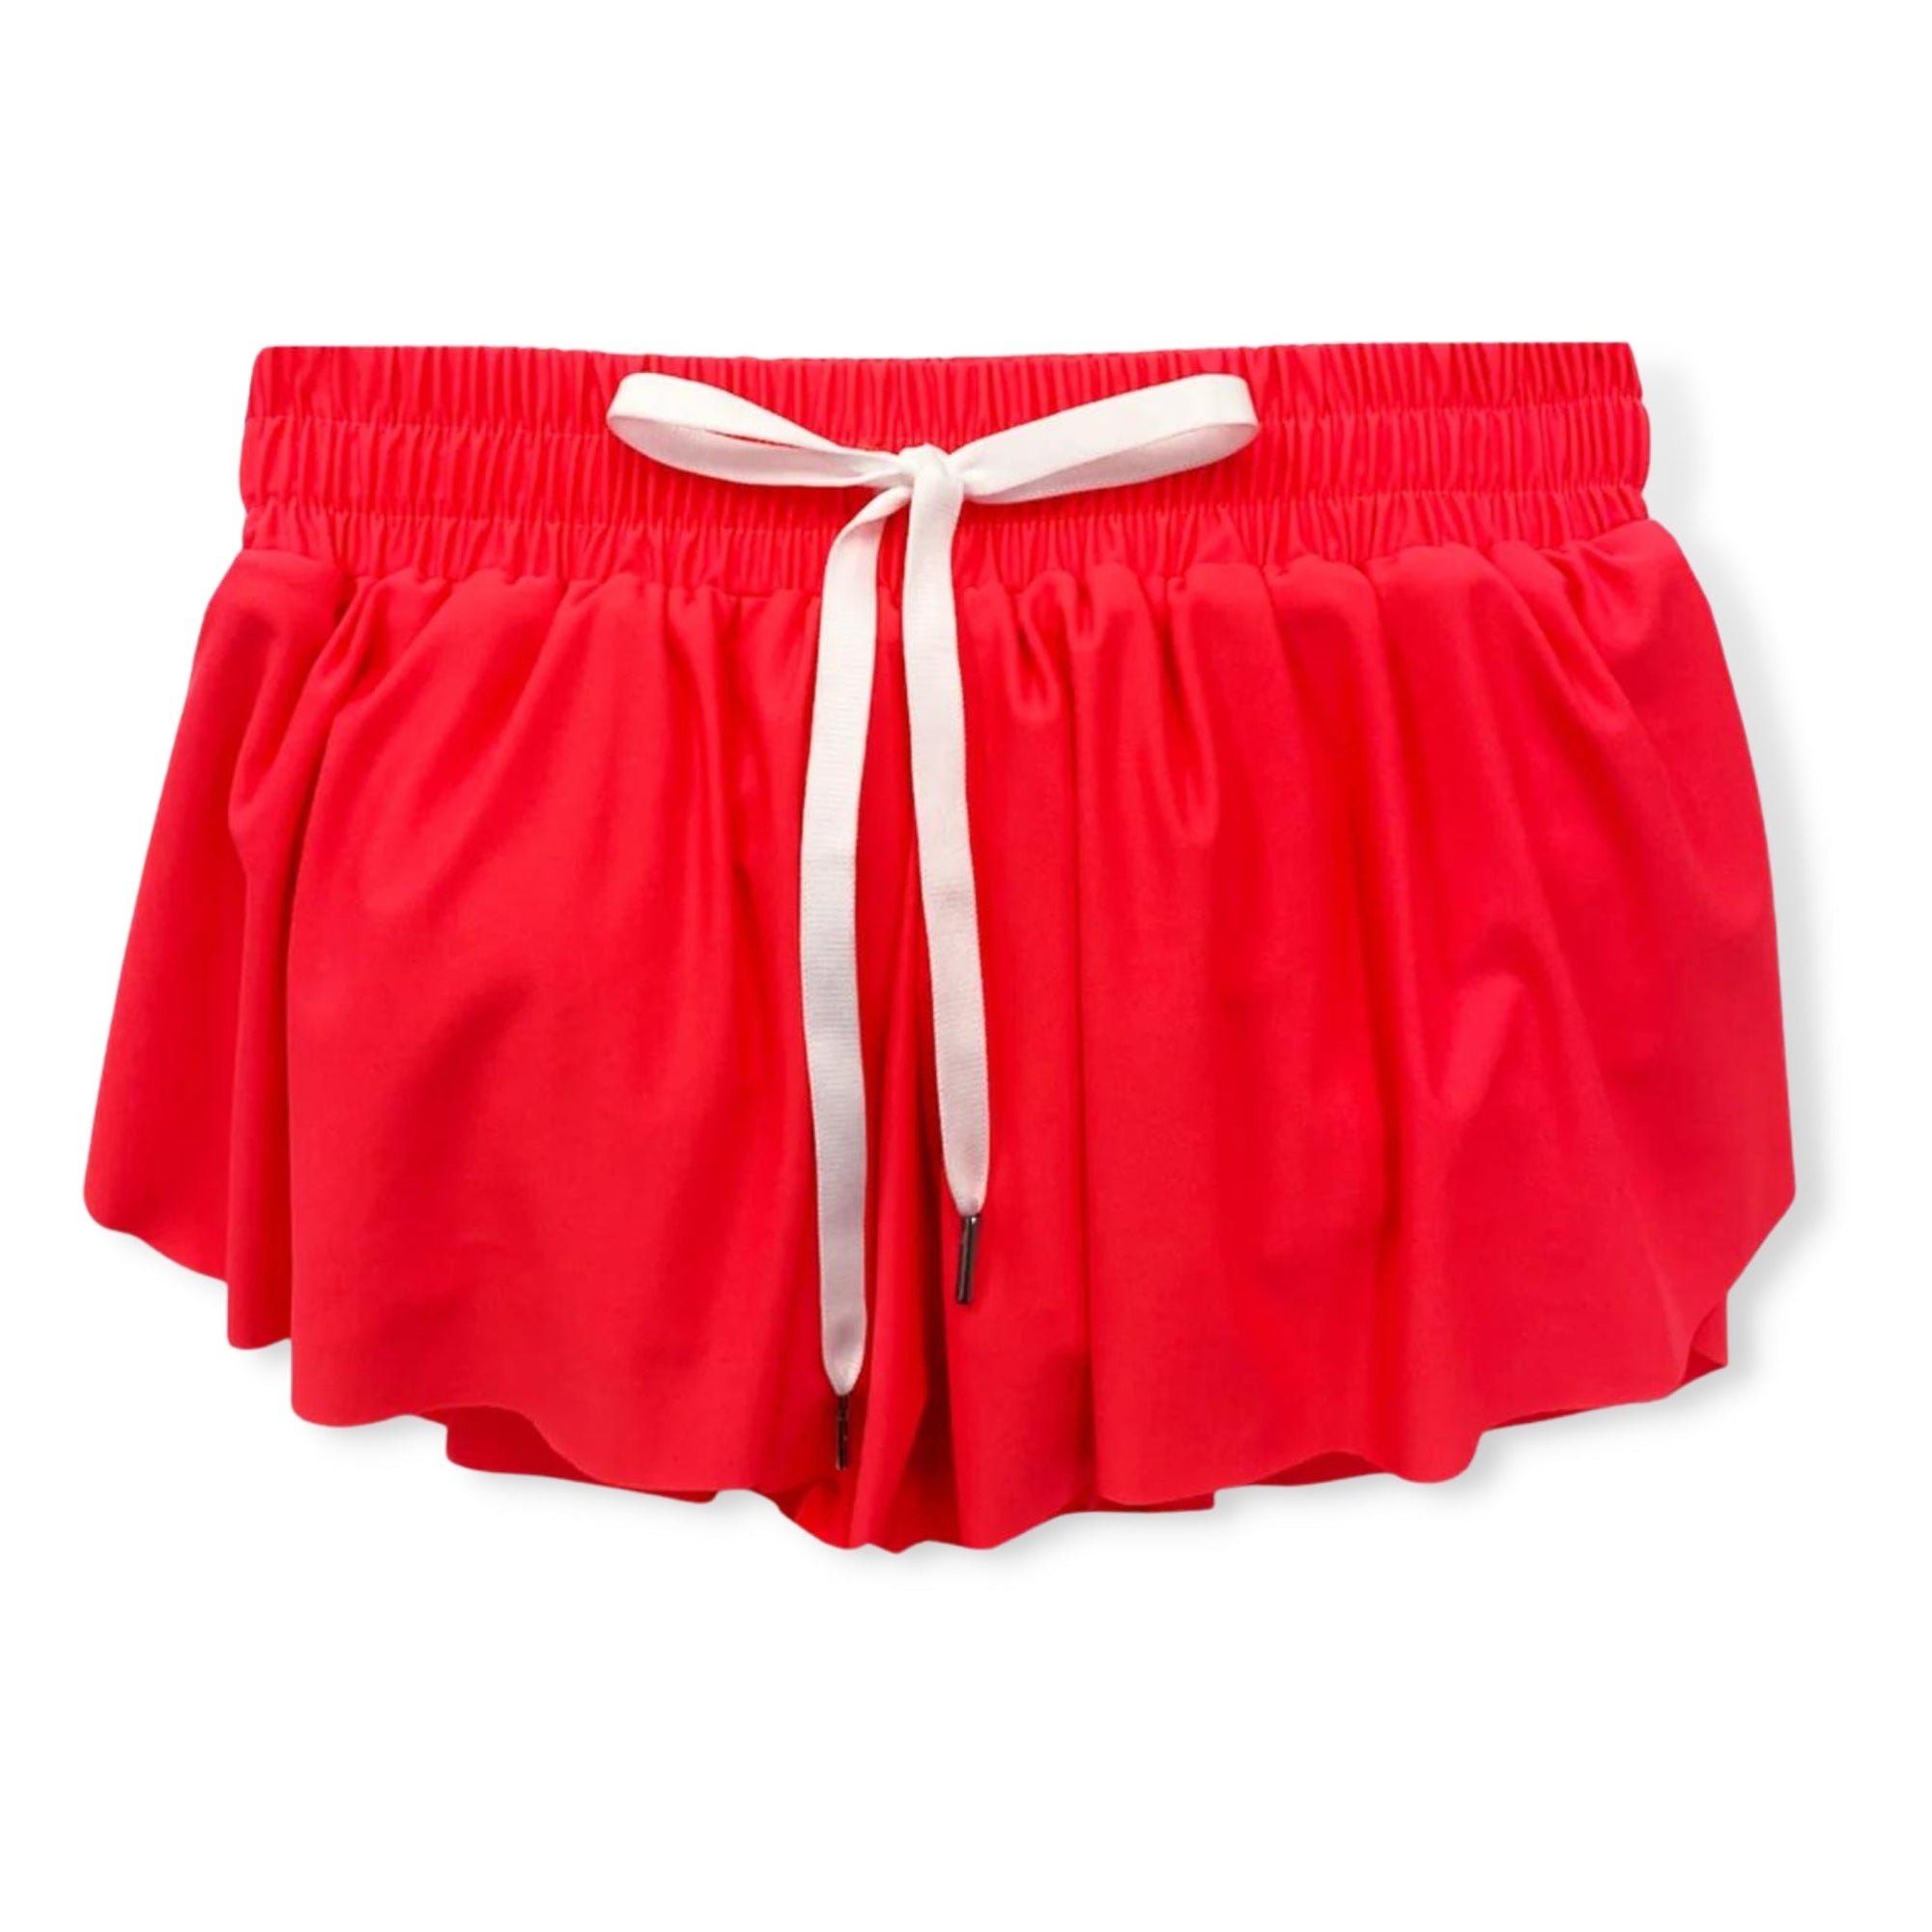 KatieJNYC Neon Mango Farrah Shorts - a Spirit Animal - Shorts $30-$60 $60-$90 active May 2023